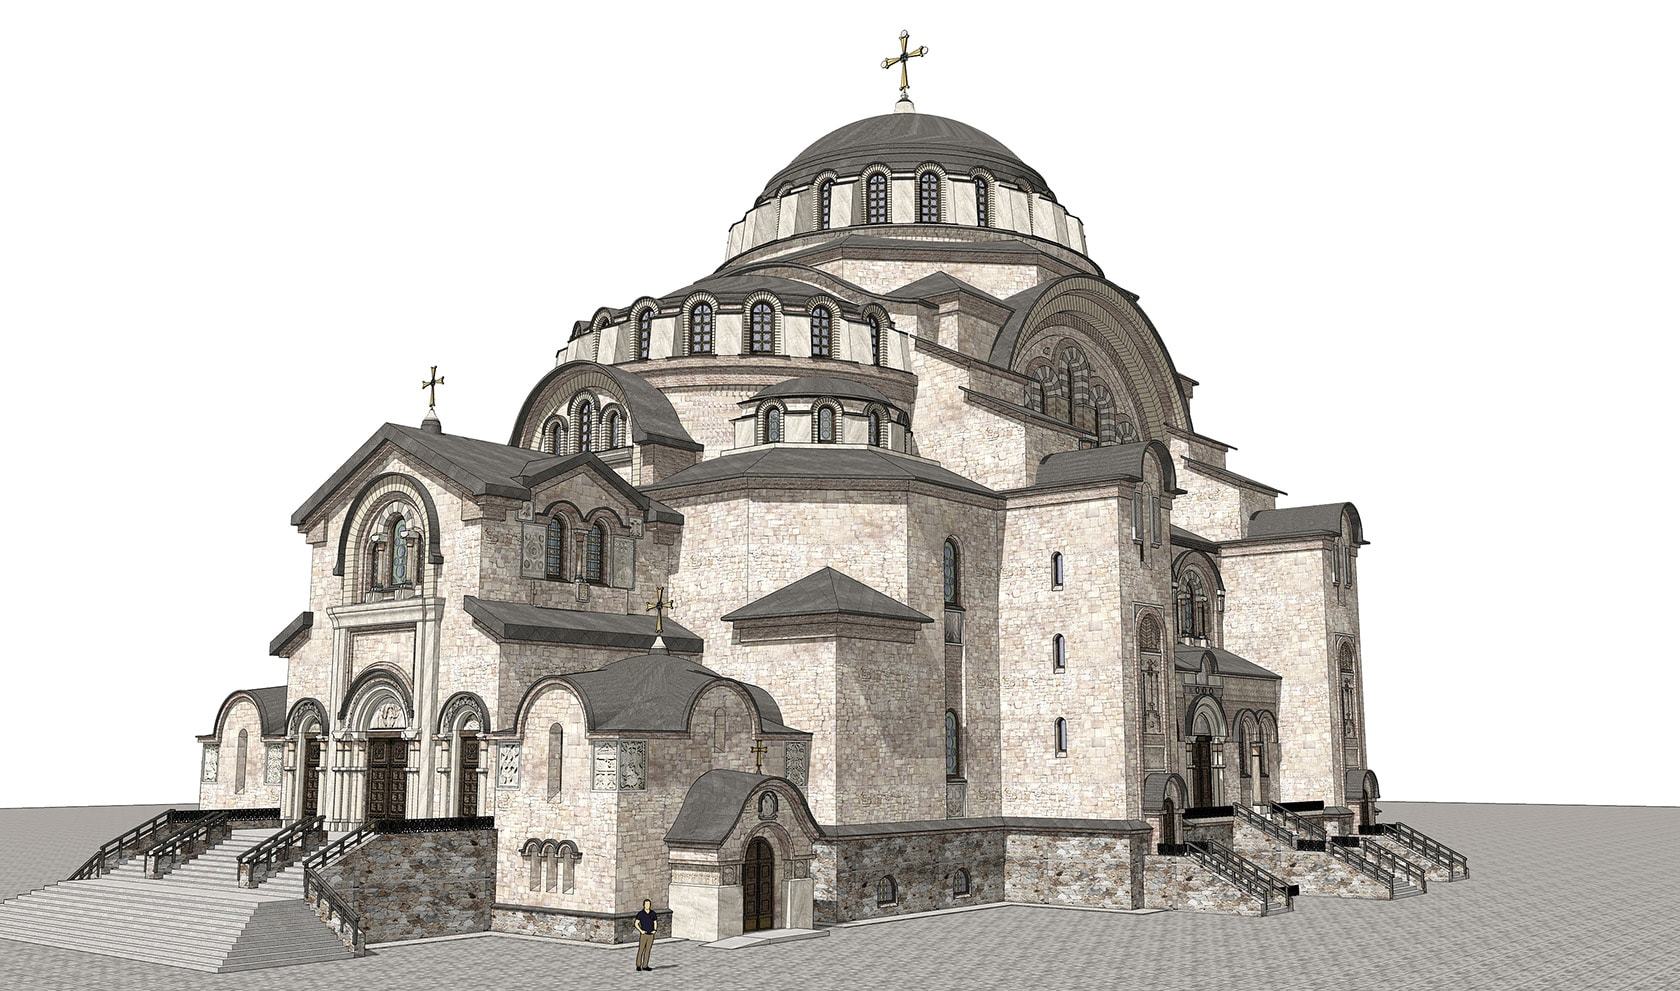 Одним из основных достижений византийской архитектуры является формирование основных типов культовых